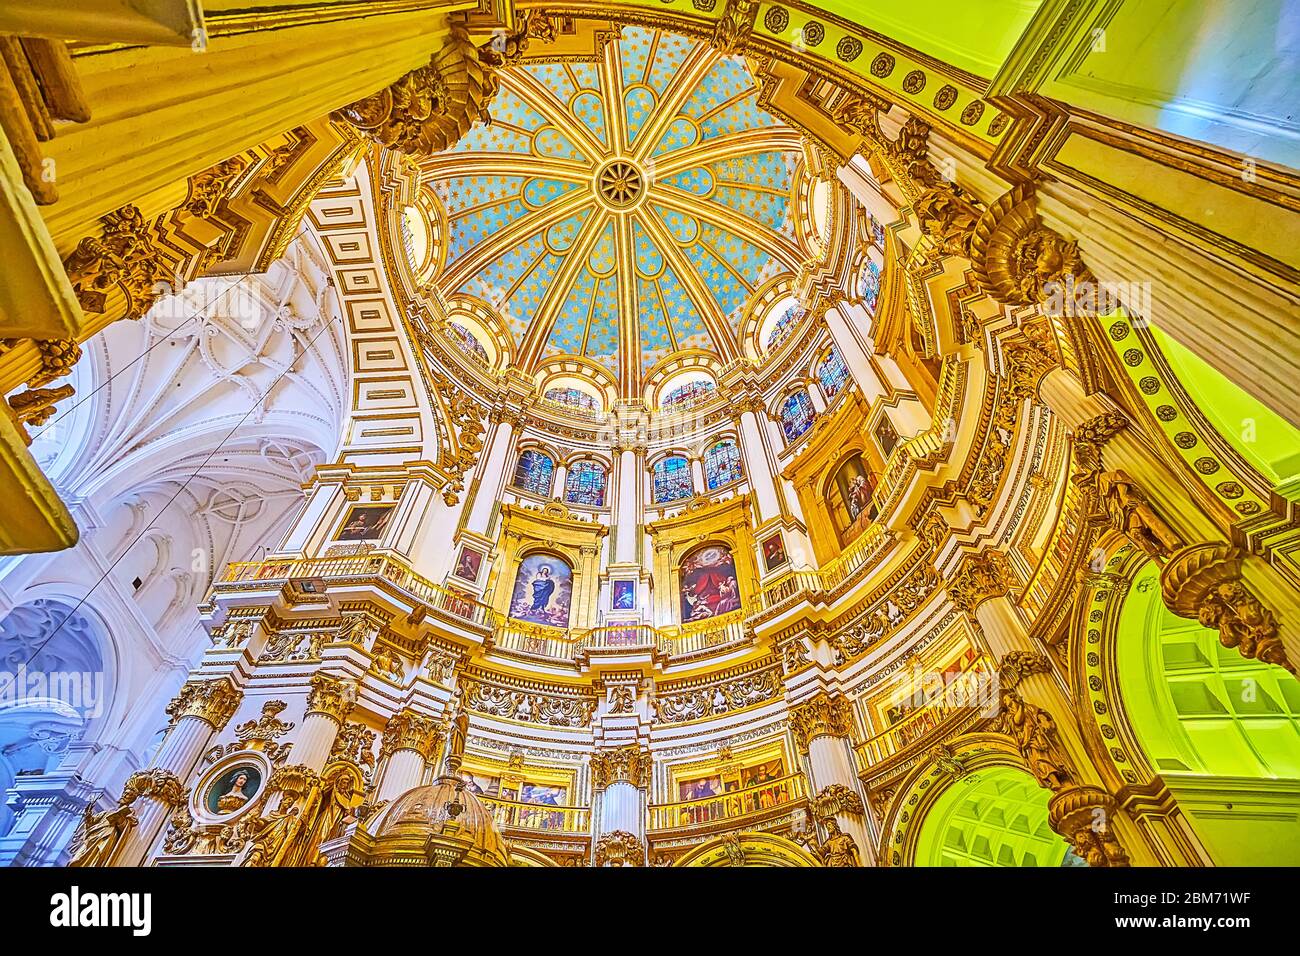 GRENADE, ESPAGNE - 25 SEPTEMBRE 2019 : la coupole intérieure de la chapelle principale (Capilla Major) de la cathédrale avec des étoiles sur le ciel bleu, le plâtre, les guirlandes dorées Banque D'Images